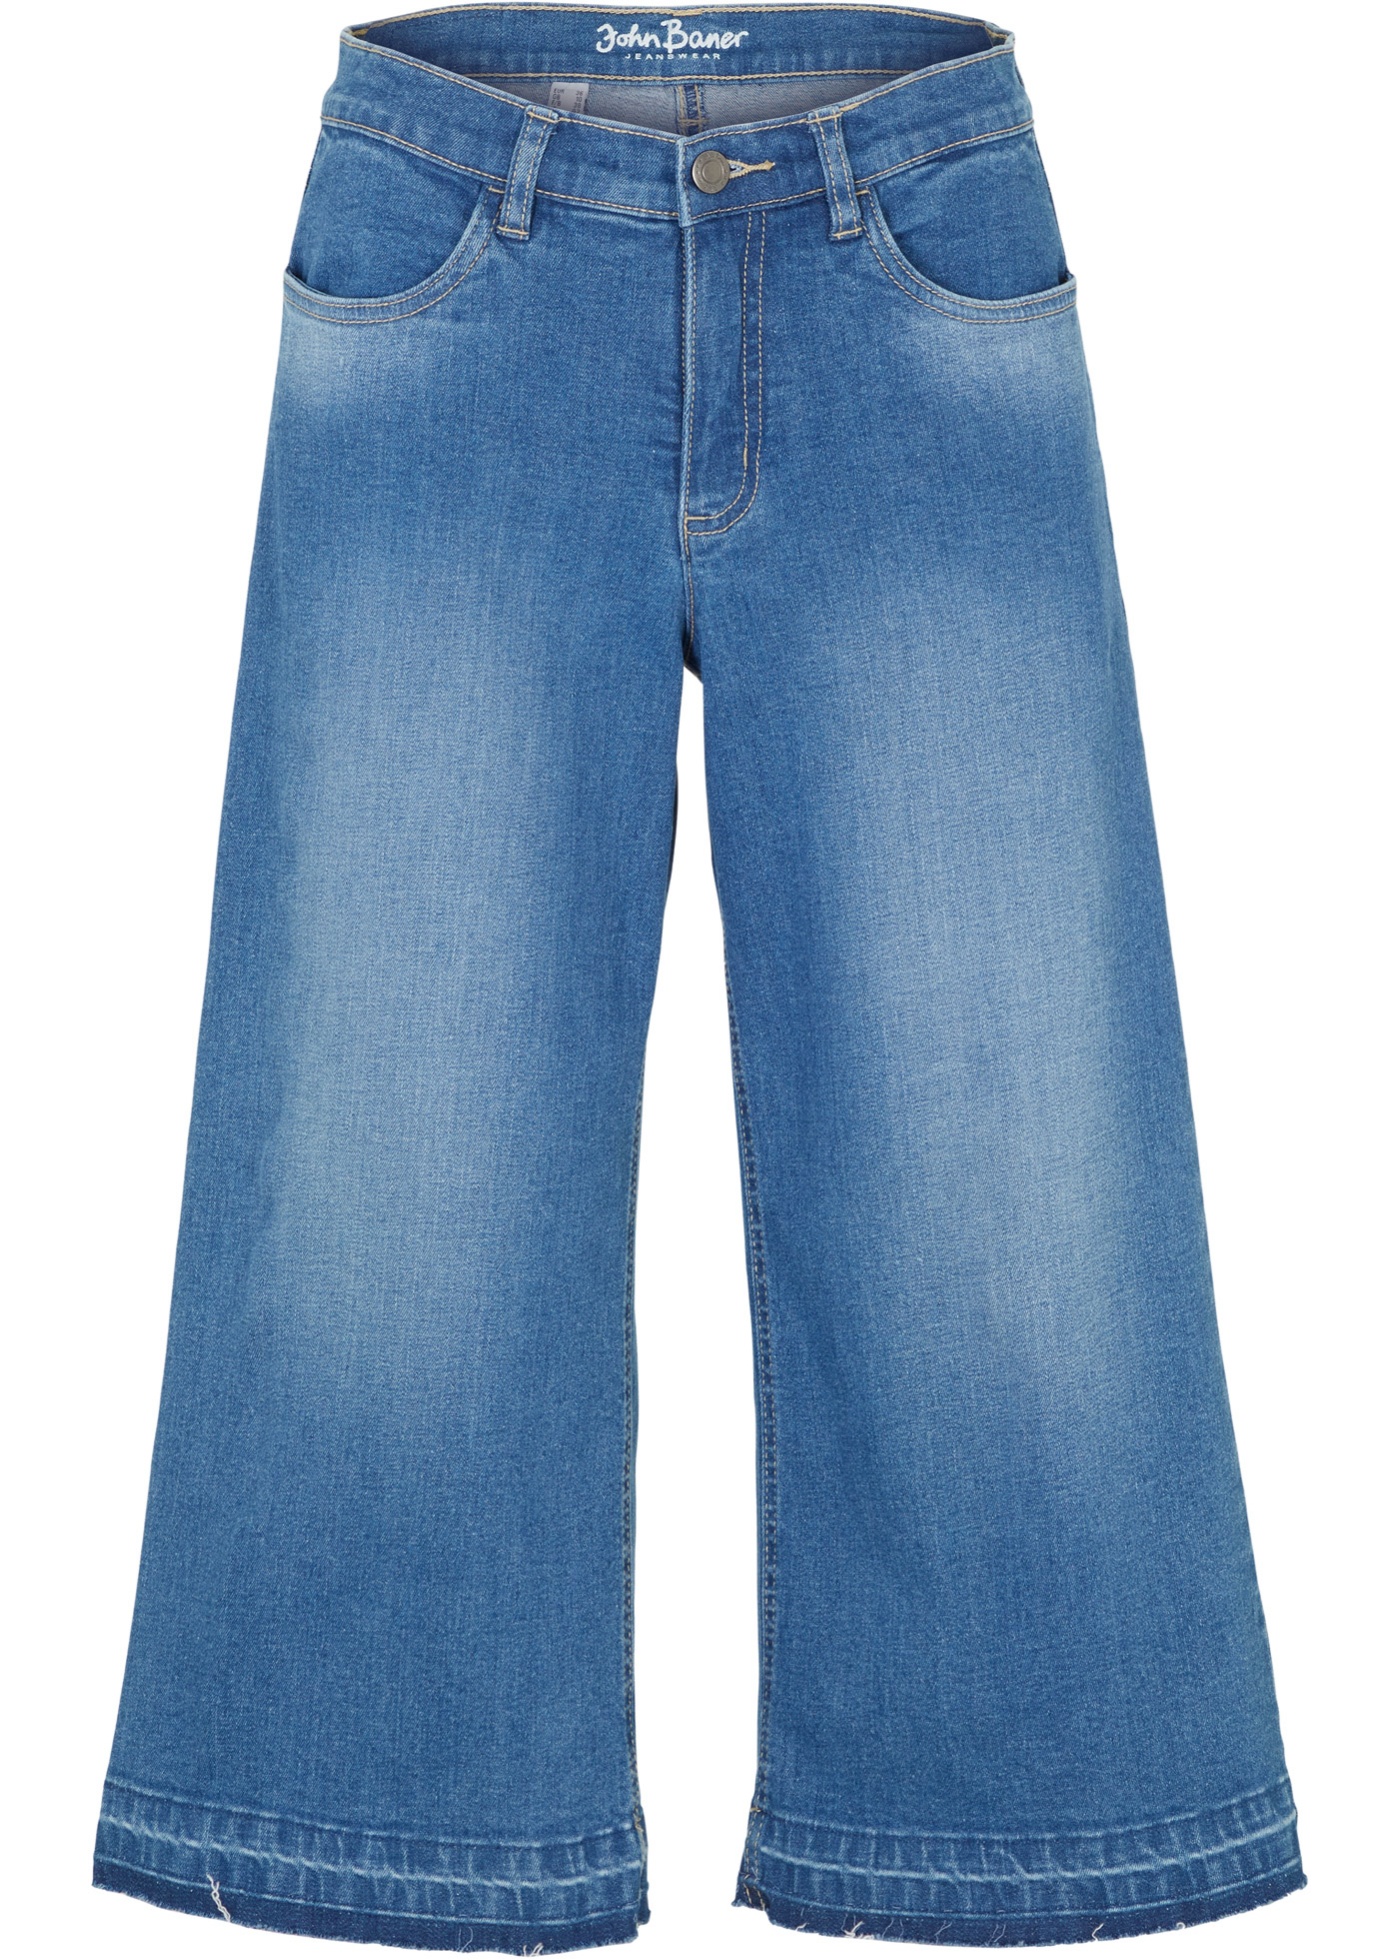 Capri stretch jeans, culotte